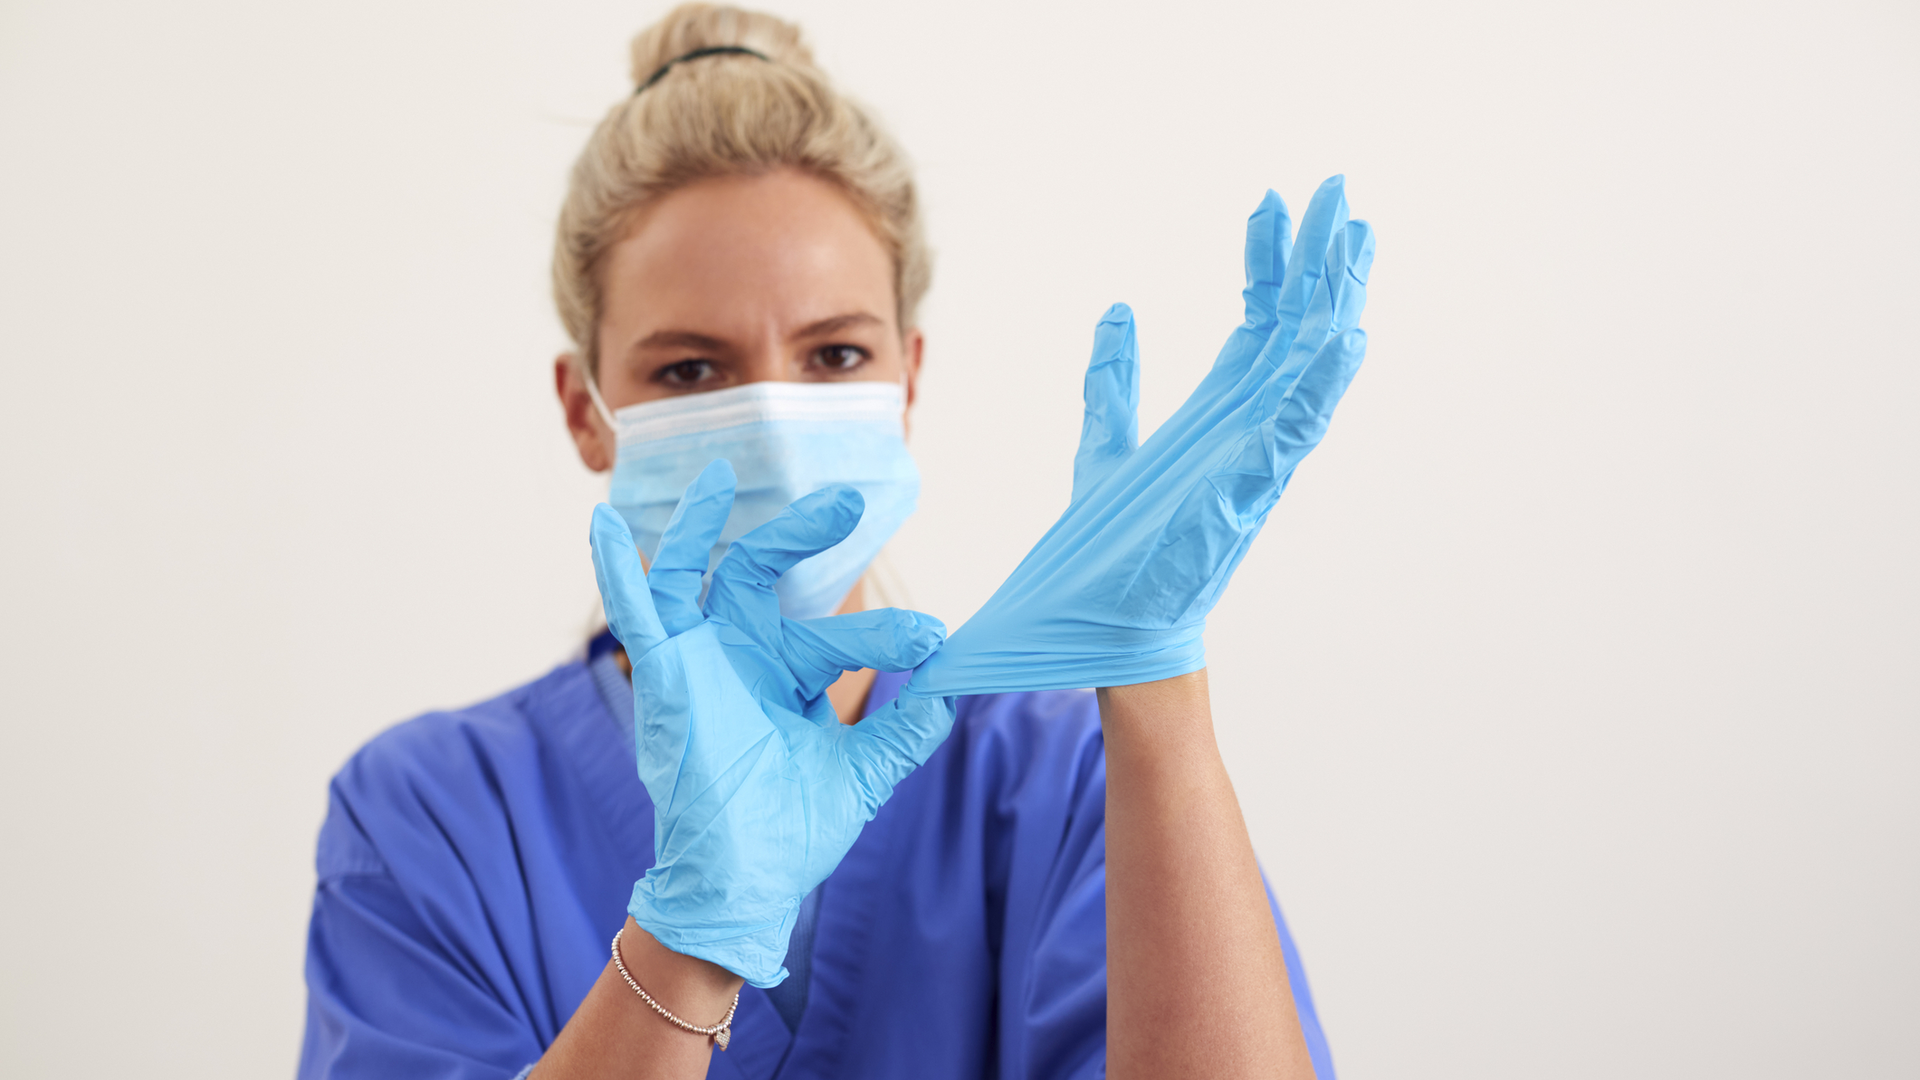 Надеть стерильные перчатки. Надевание нестерильных перчаток. PPE Gloves on people. Как одевать стерильные перчатки хирургу. Стерильные медицинские перчатки надевают в случаях